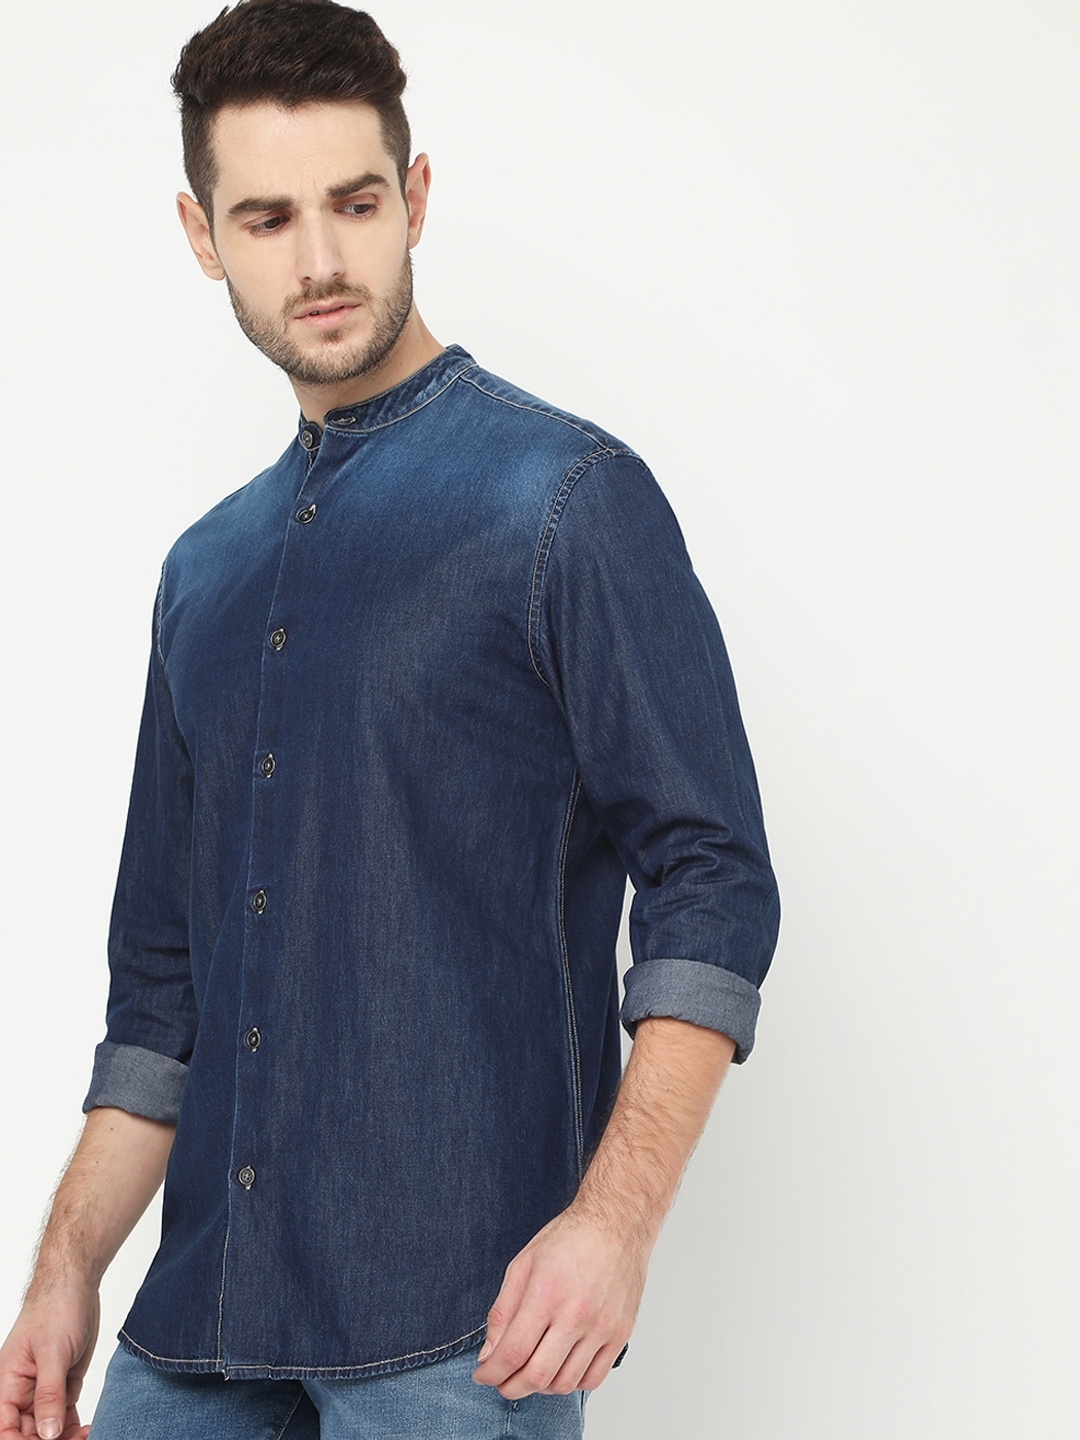 Men's Mandarin Collar Dark Wash Denim Shirt